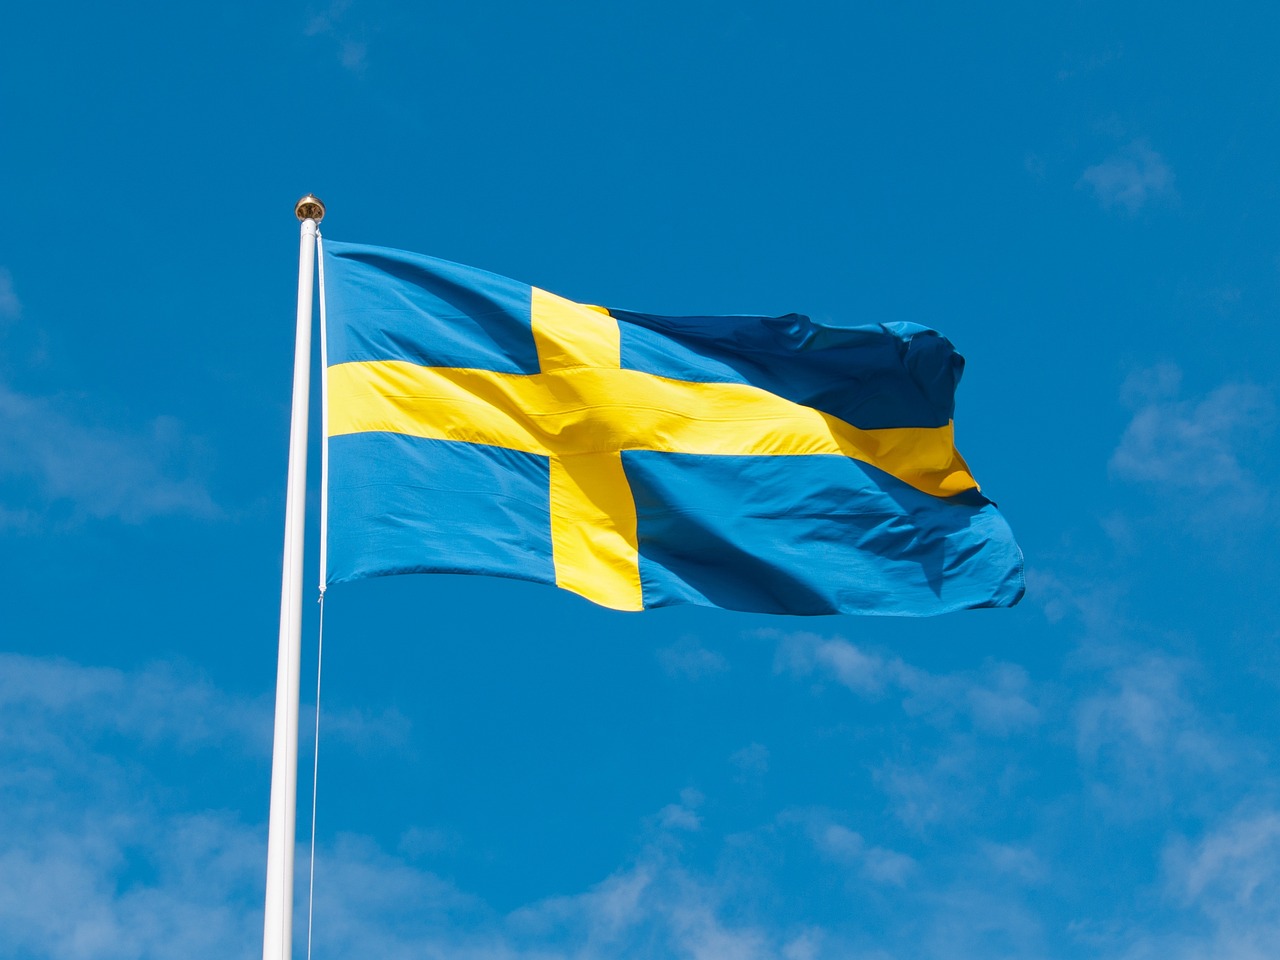 Flag of Sweden (photo credit: Unif via pixabay)